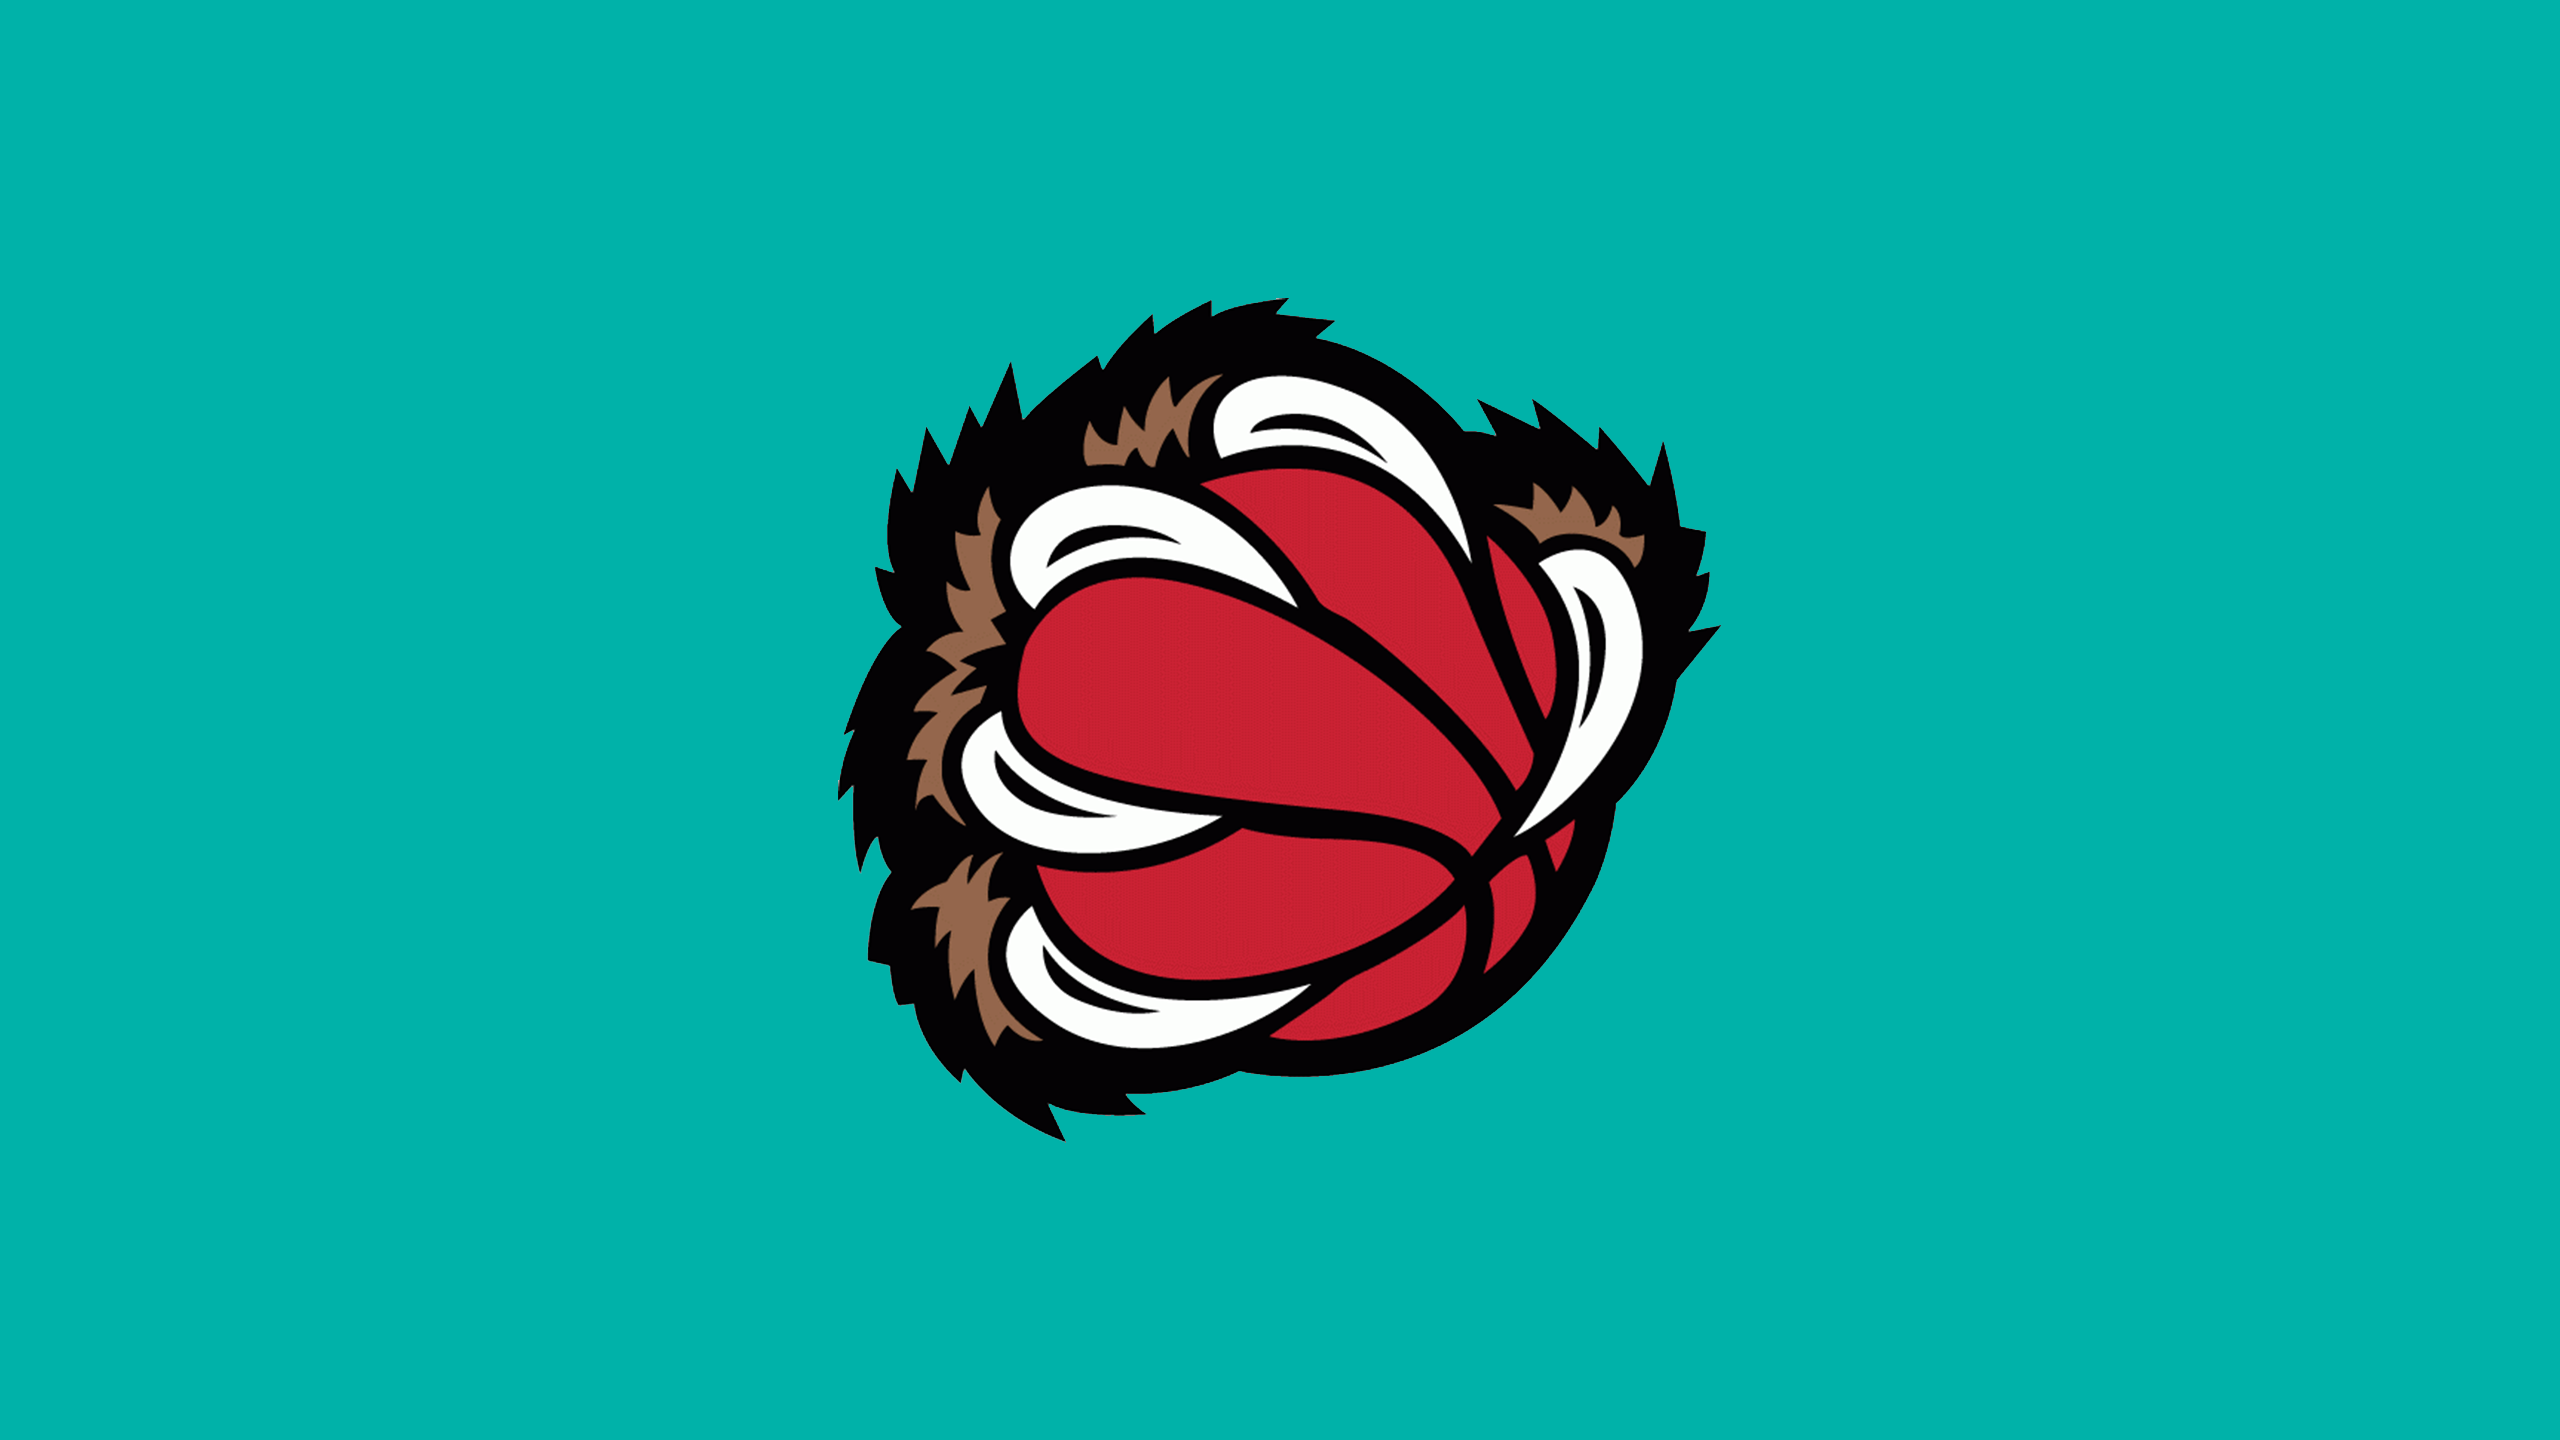 Basketball Emblem Memphis Grizzlies Nba 2560x1440